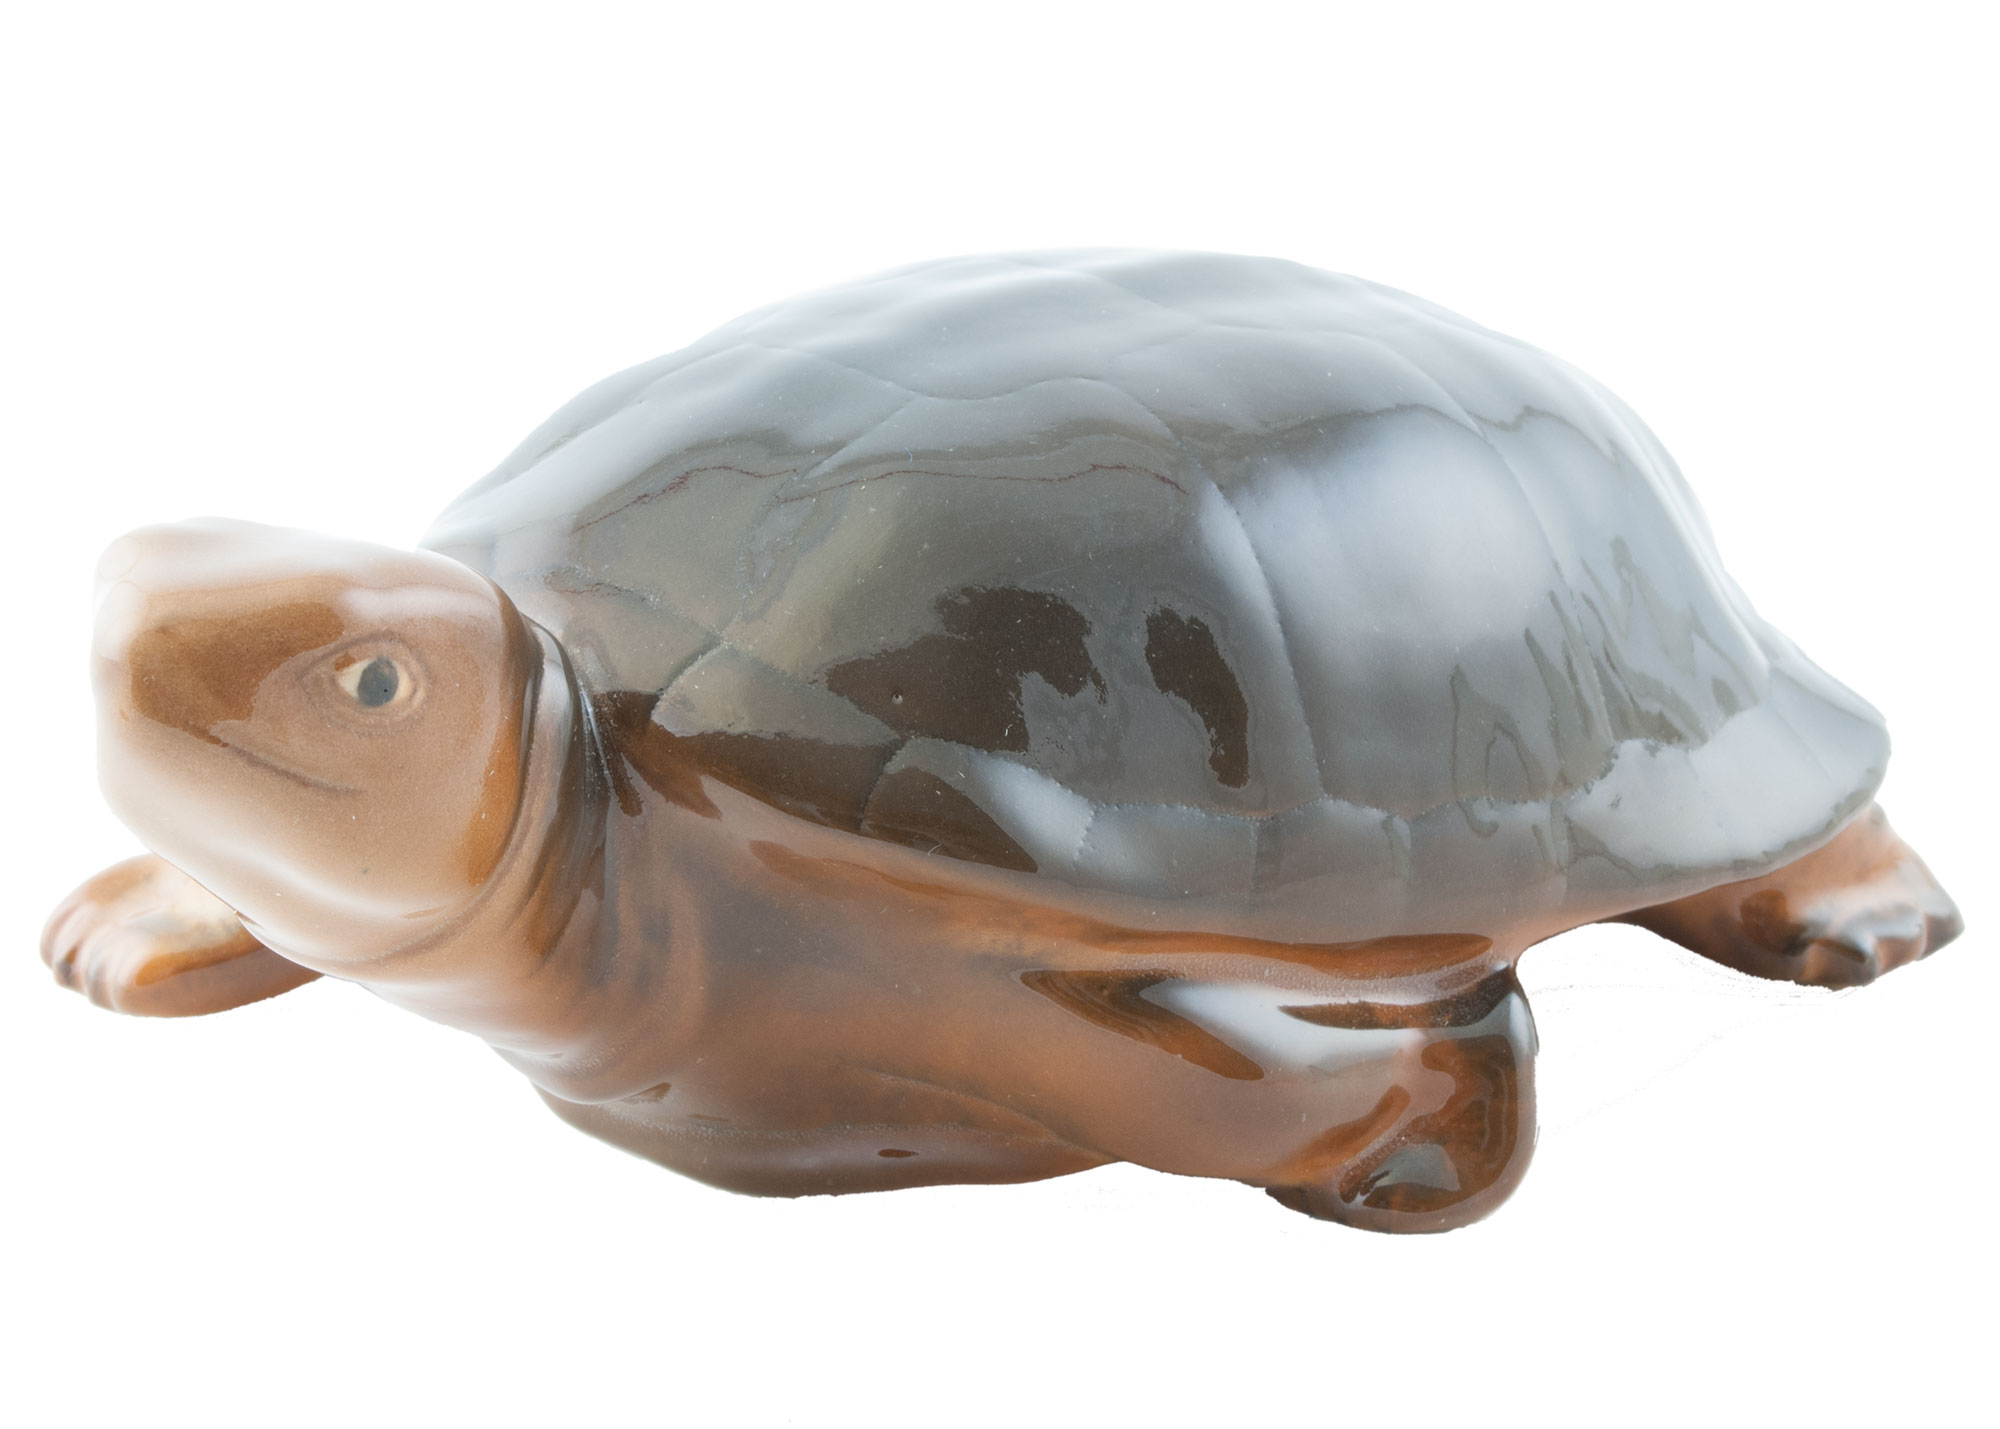 Buy Large Turtle Porcelain Figurine at GoldenCockerel.com